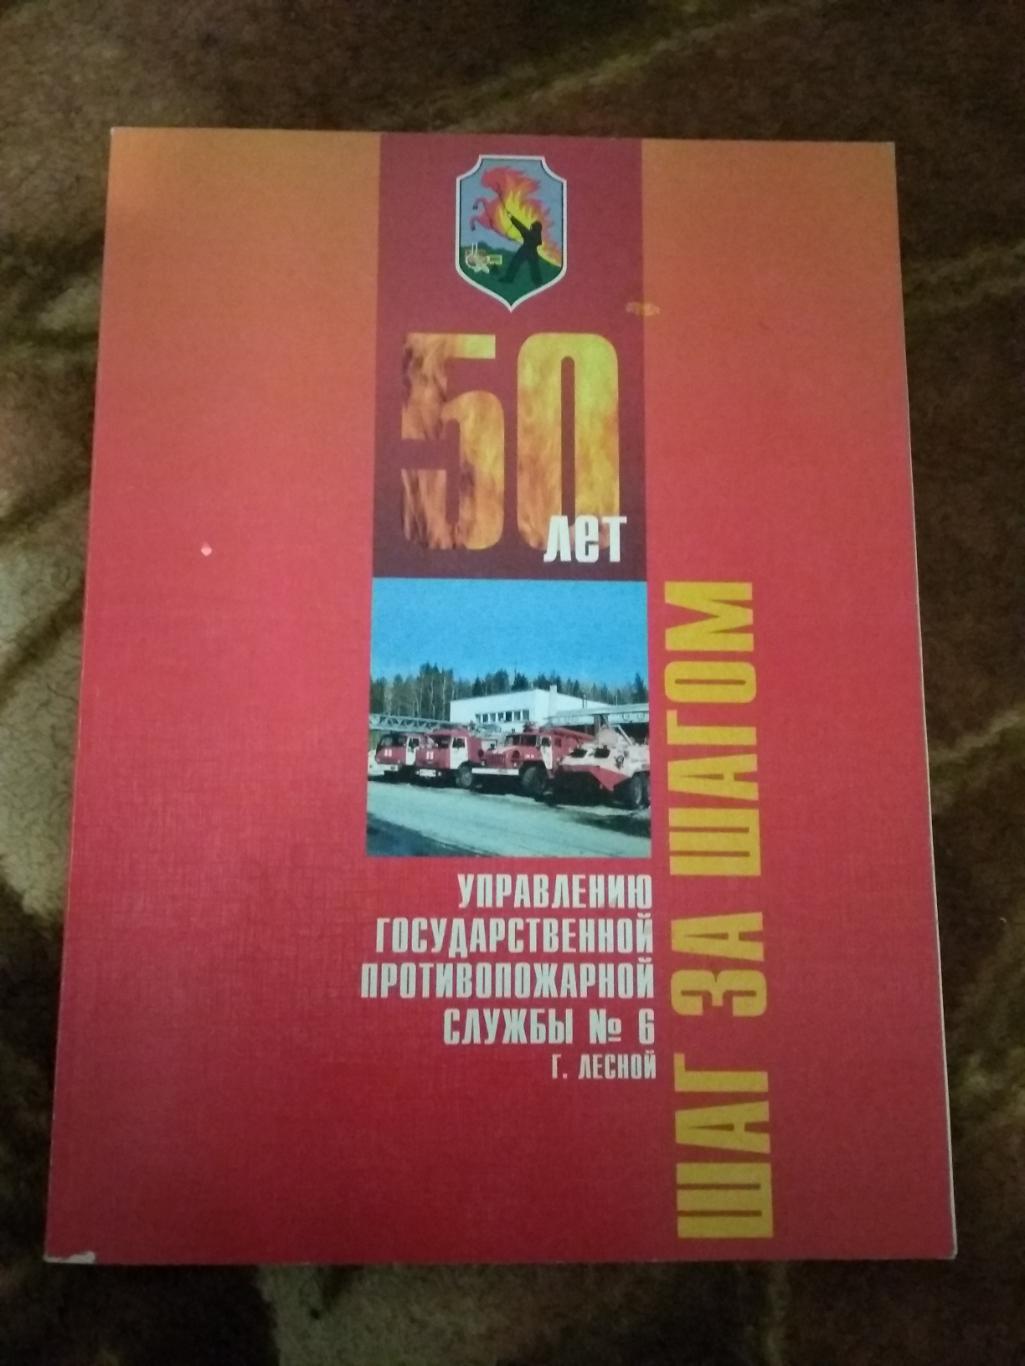 Шаг за шагом.50 лет противопожарной службы в г.Свердловск-45/Лесной. Лесной 2002